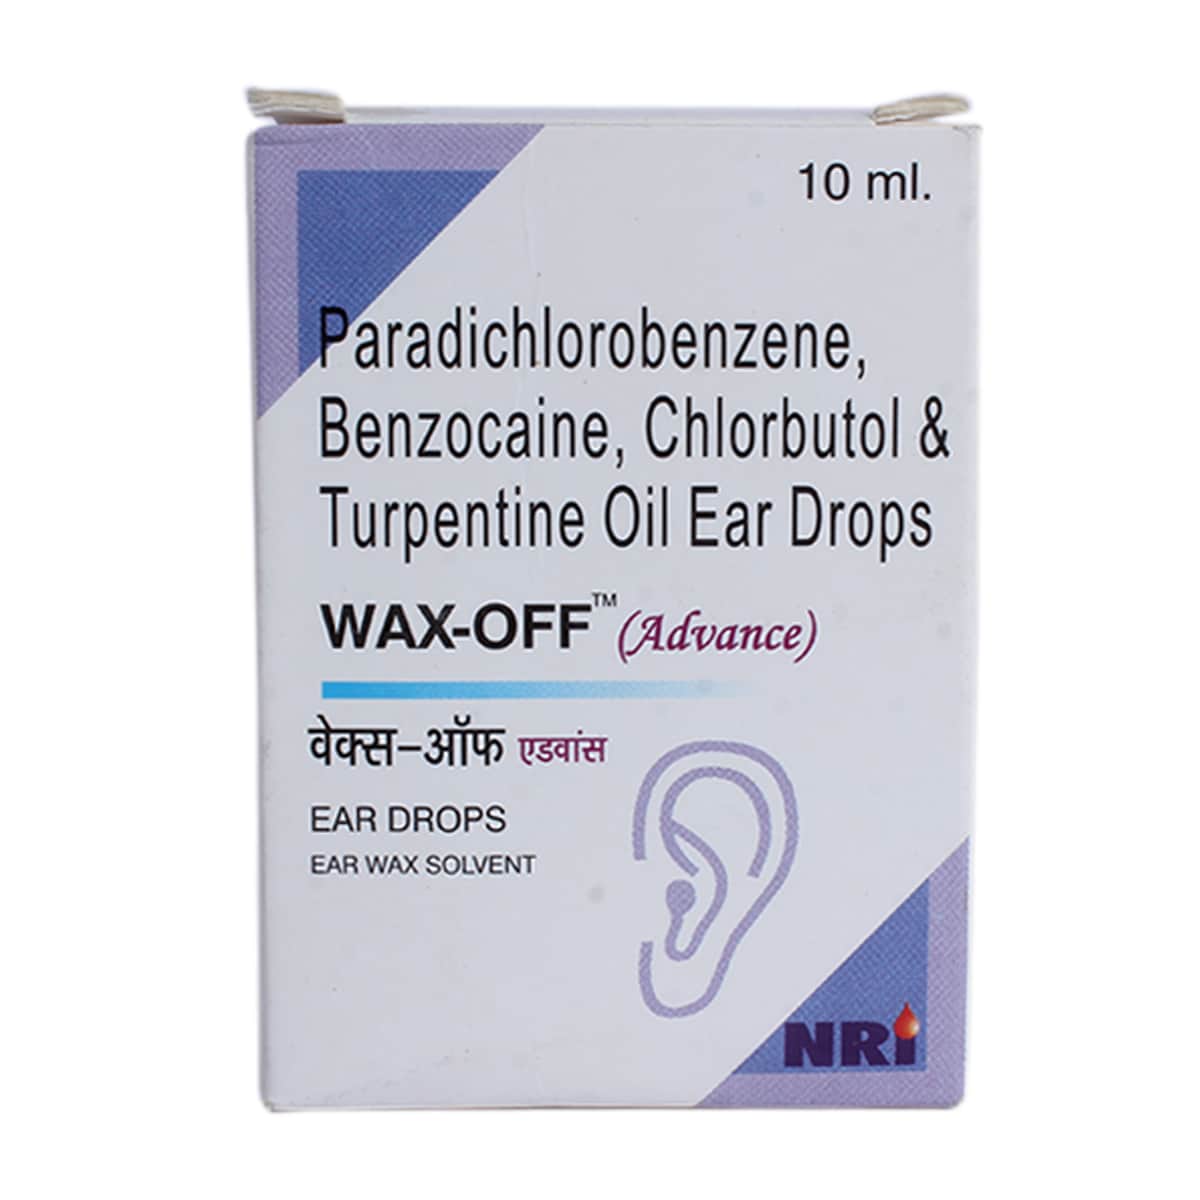 Buy Wax-Off (Advance) Ear Drops 10ml Online